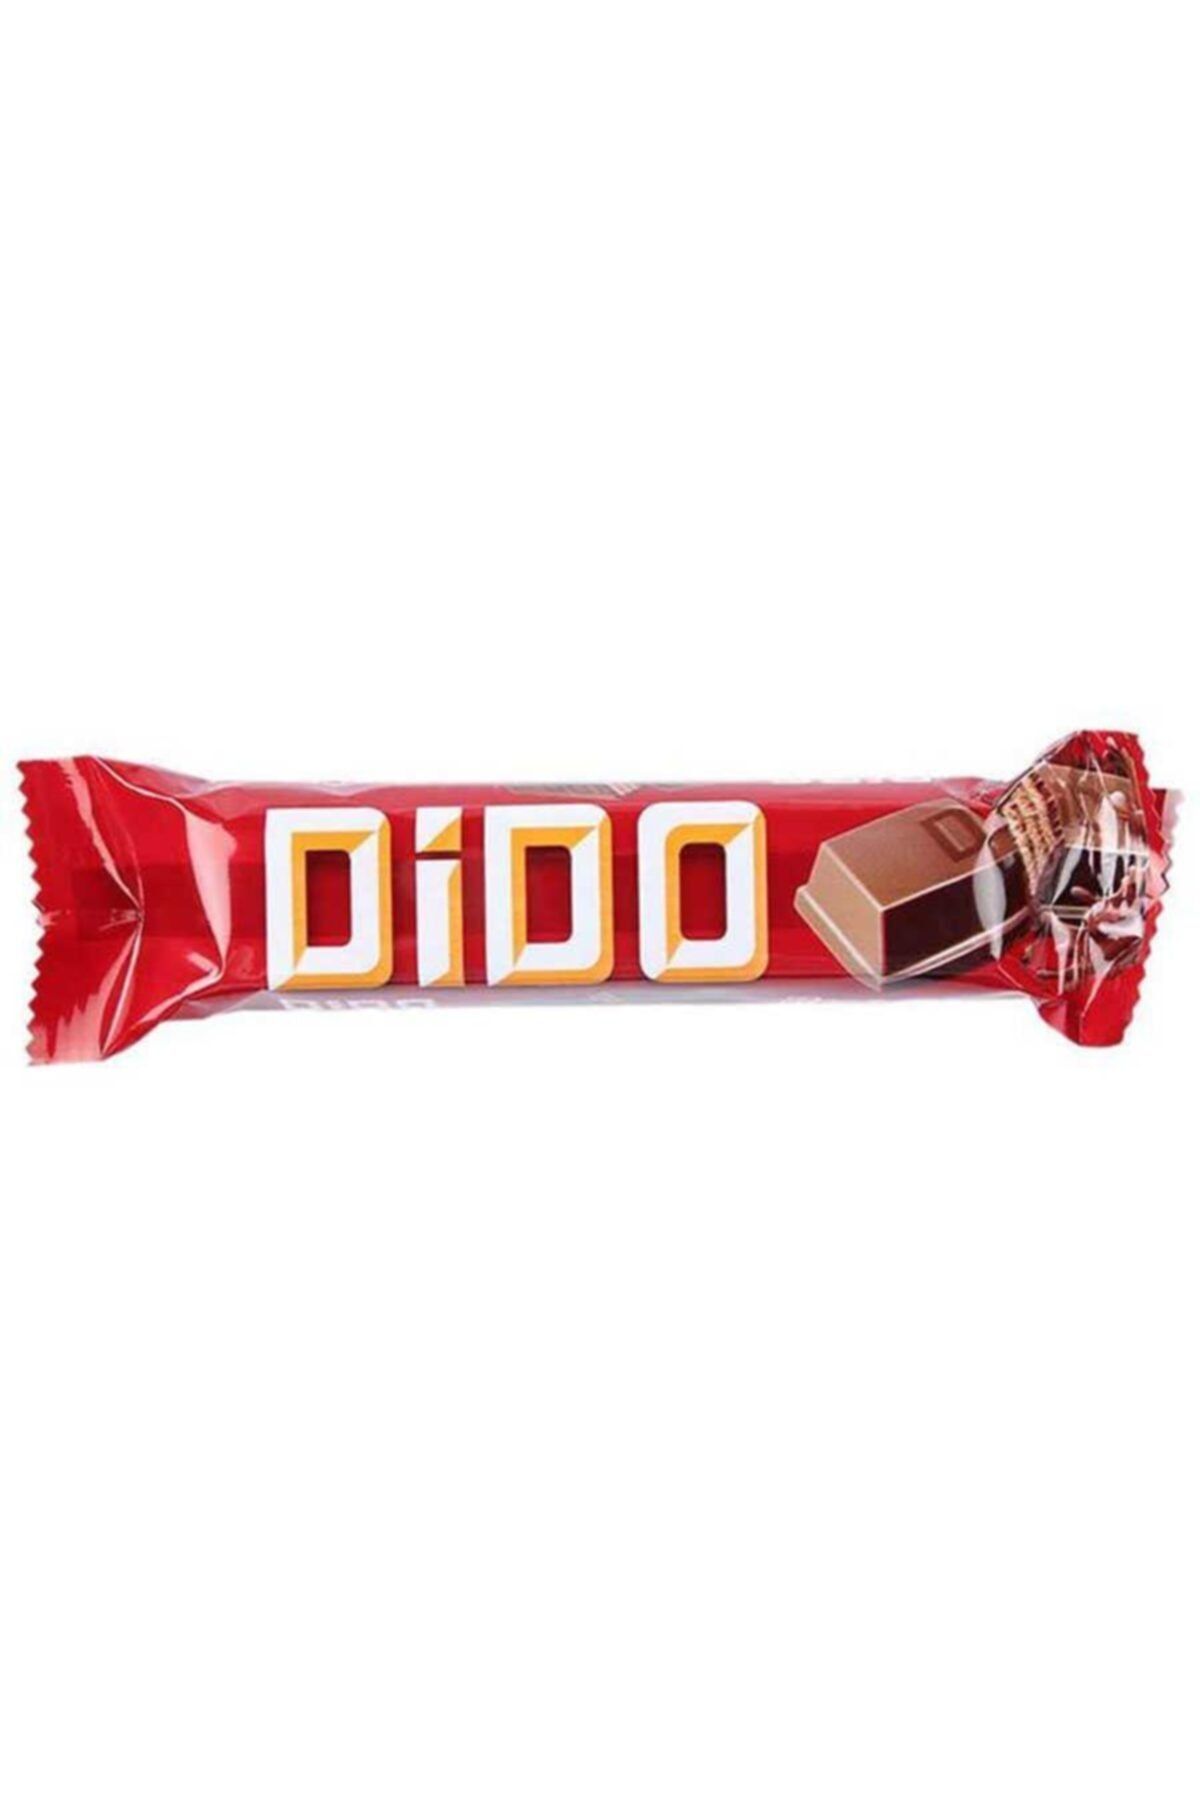 Ülker Dido Çikolata 35 gr X 24'lü